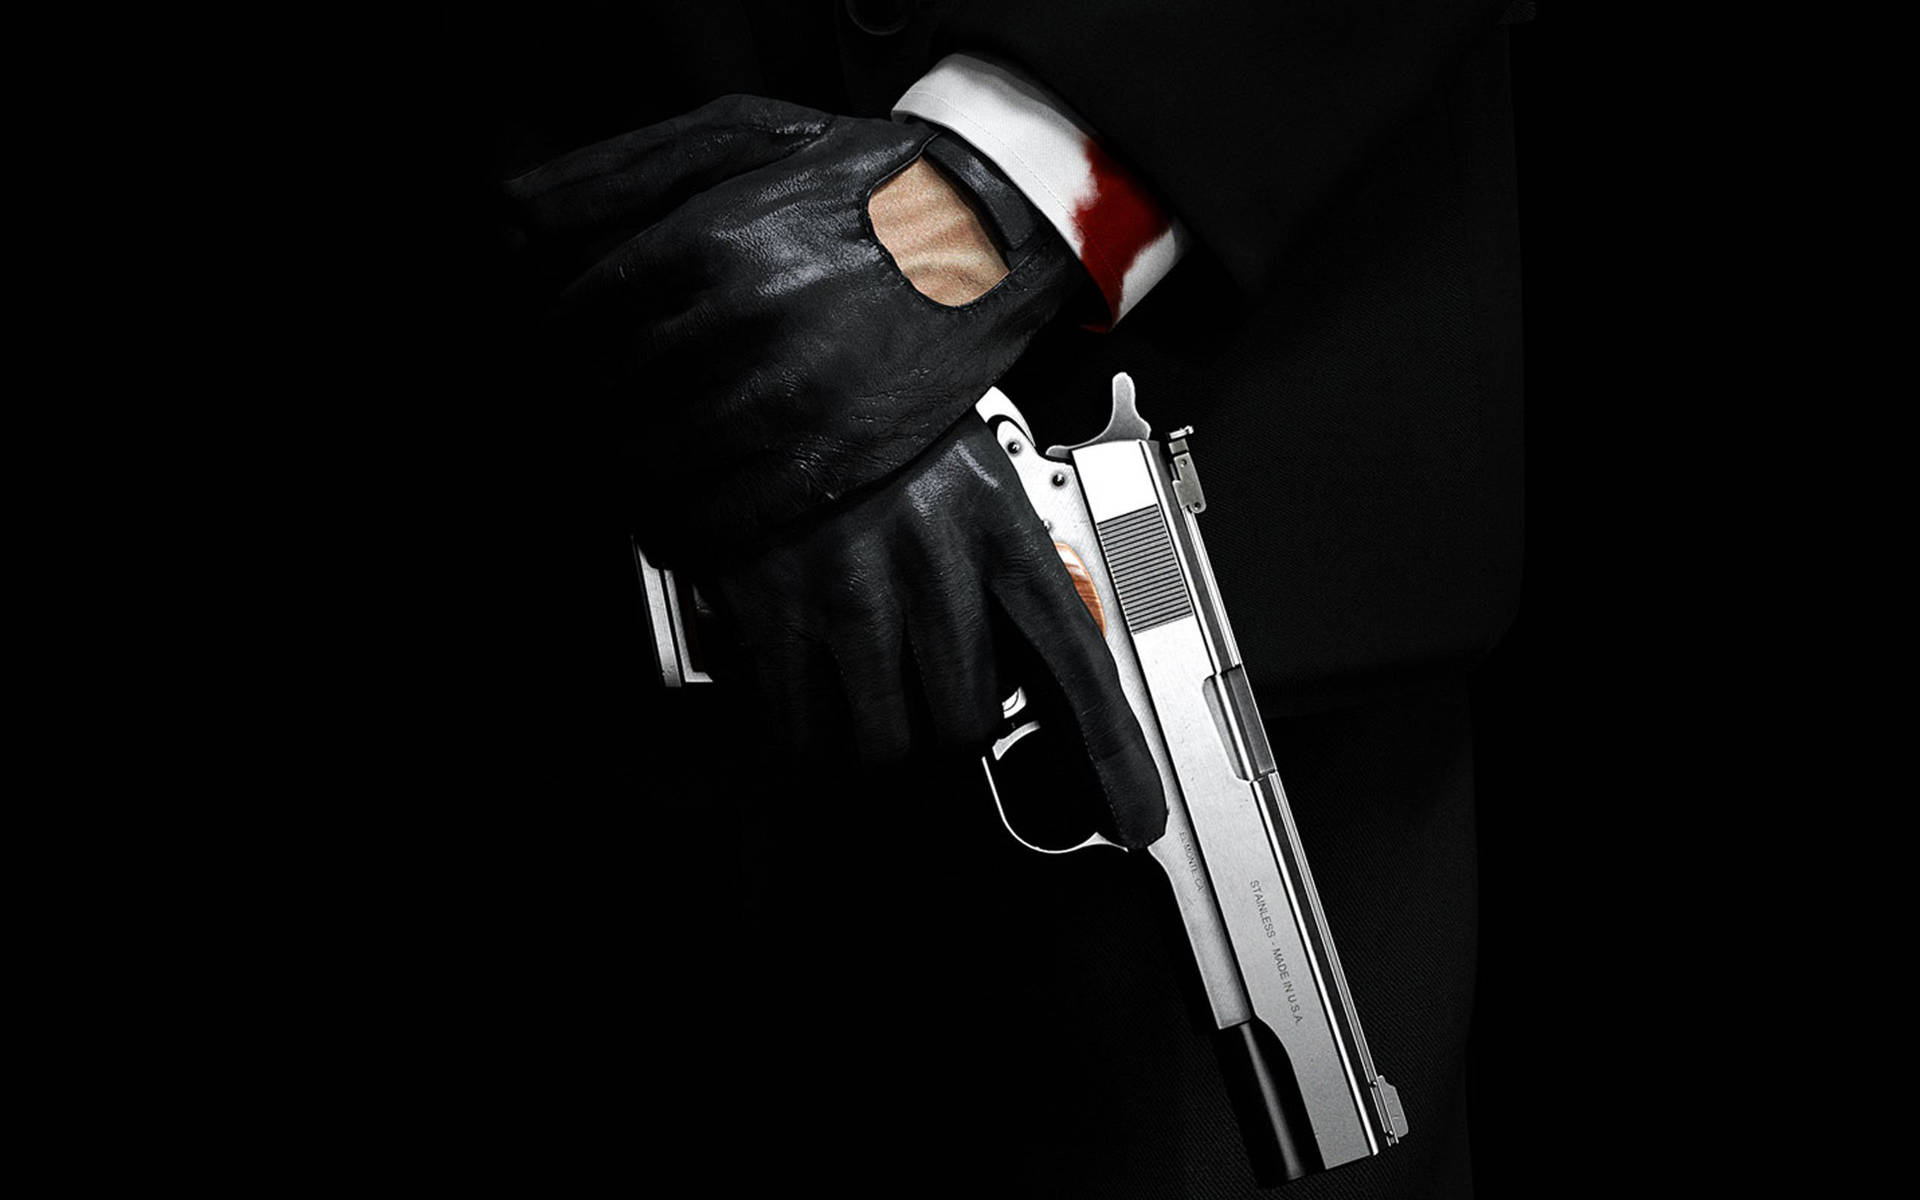 Hitman Hand Holding His Handgun Background